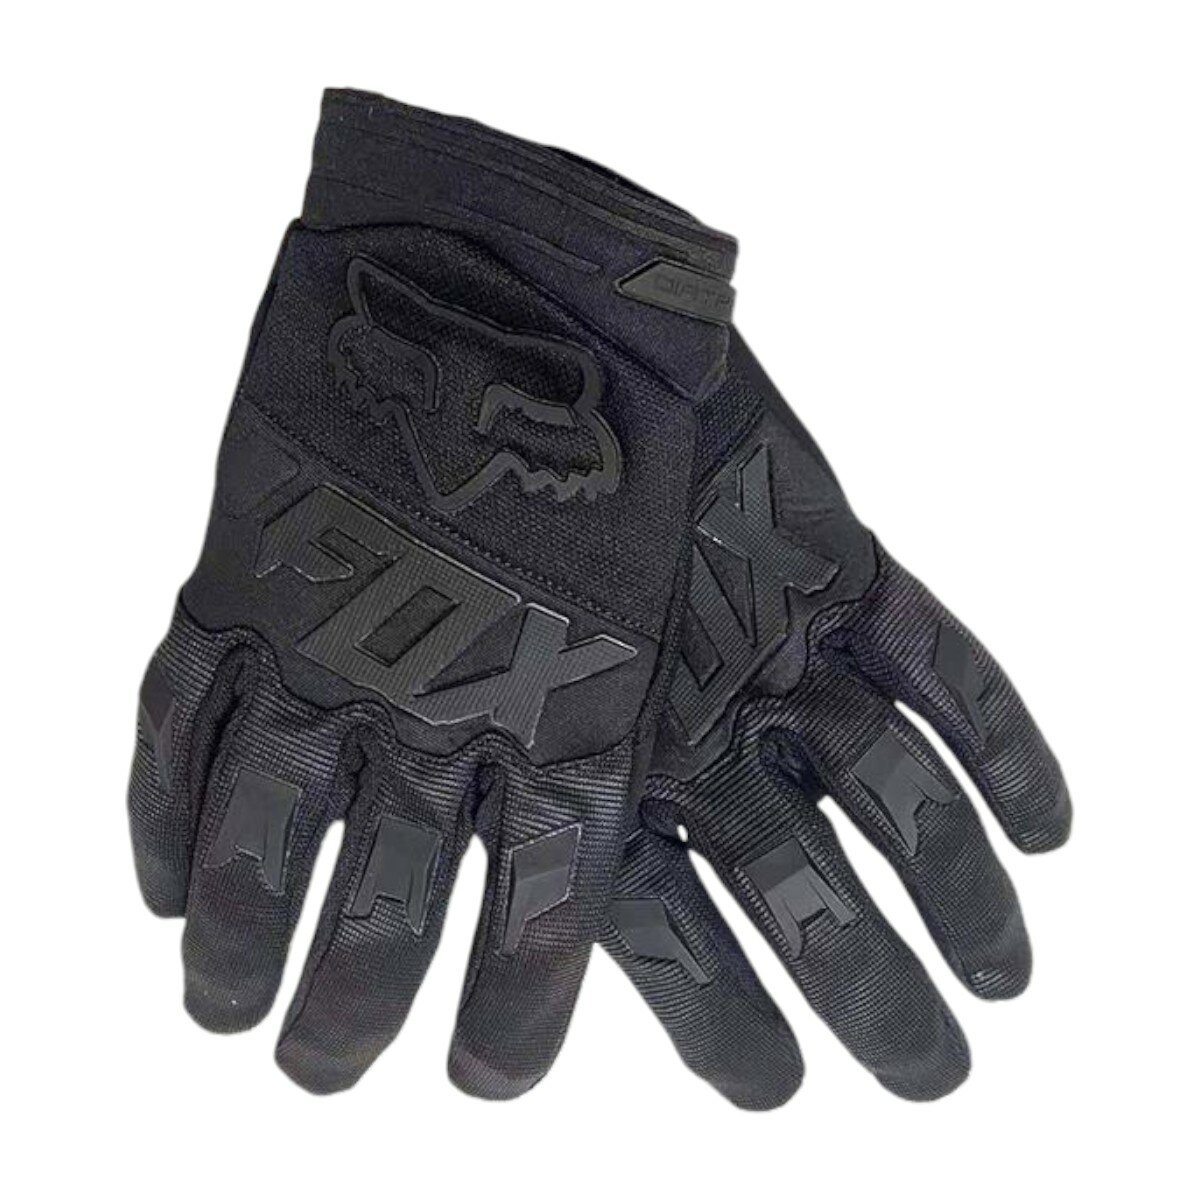 Мотоперчатки перчатки текстильные FOX NFG-11 спортивные для мотокросса кросса мотоциклиста на кроссовый мотоцикл питбайк эндуро, черные, XL